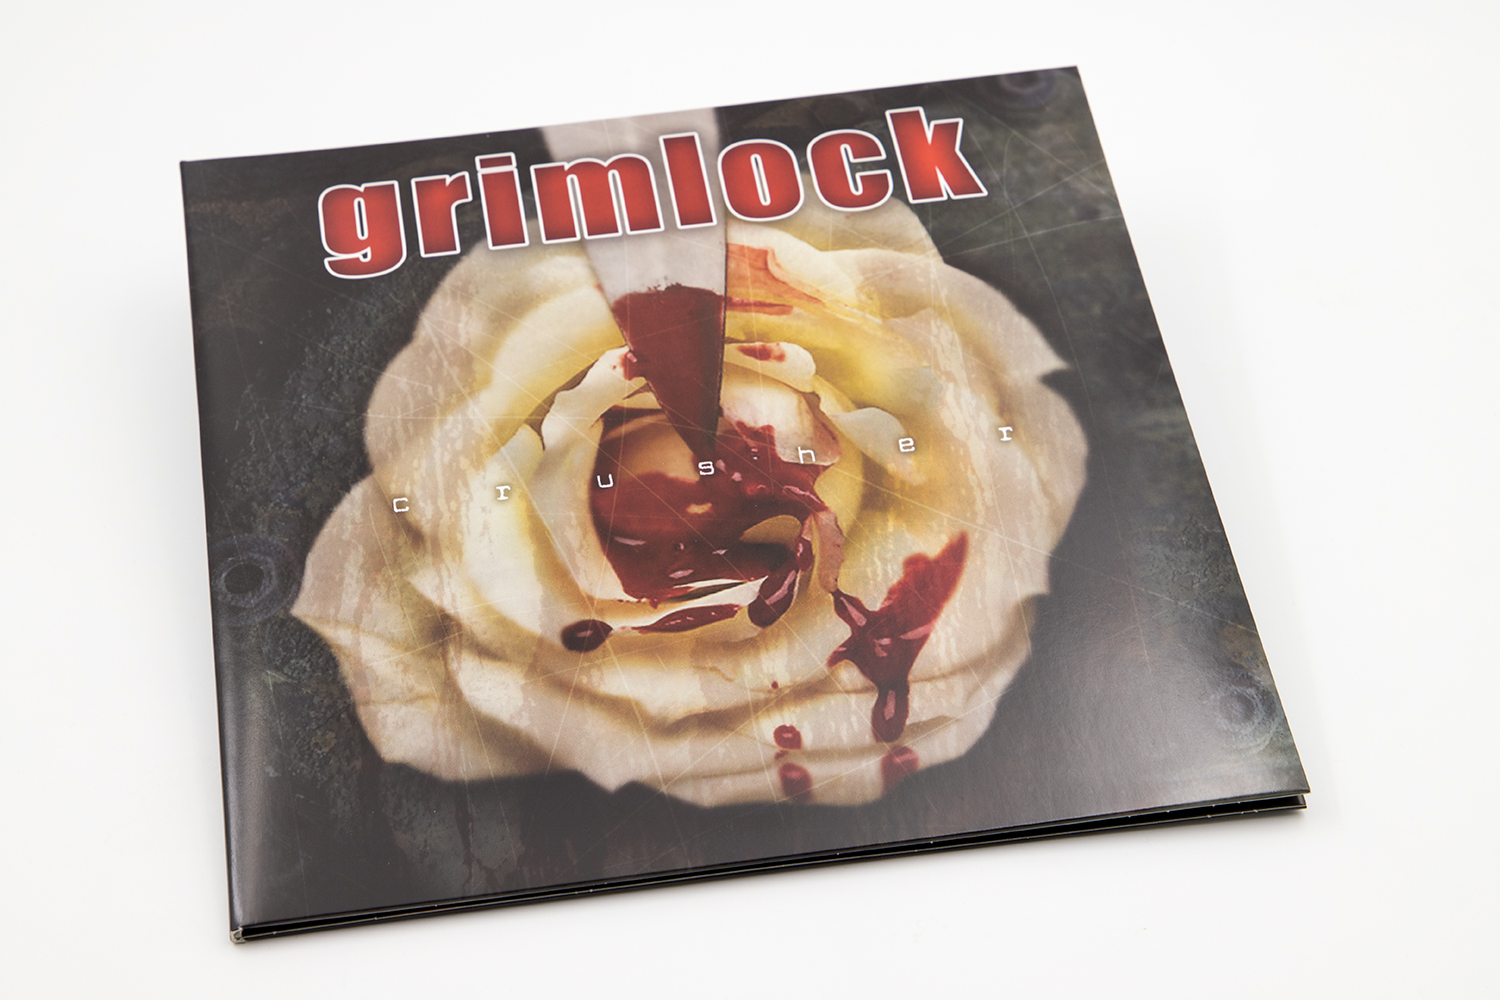 GRIMLOCK "Crusher" Gatefold 10" vinyl